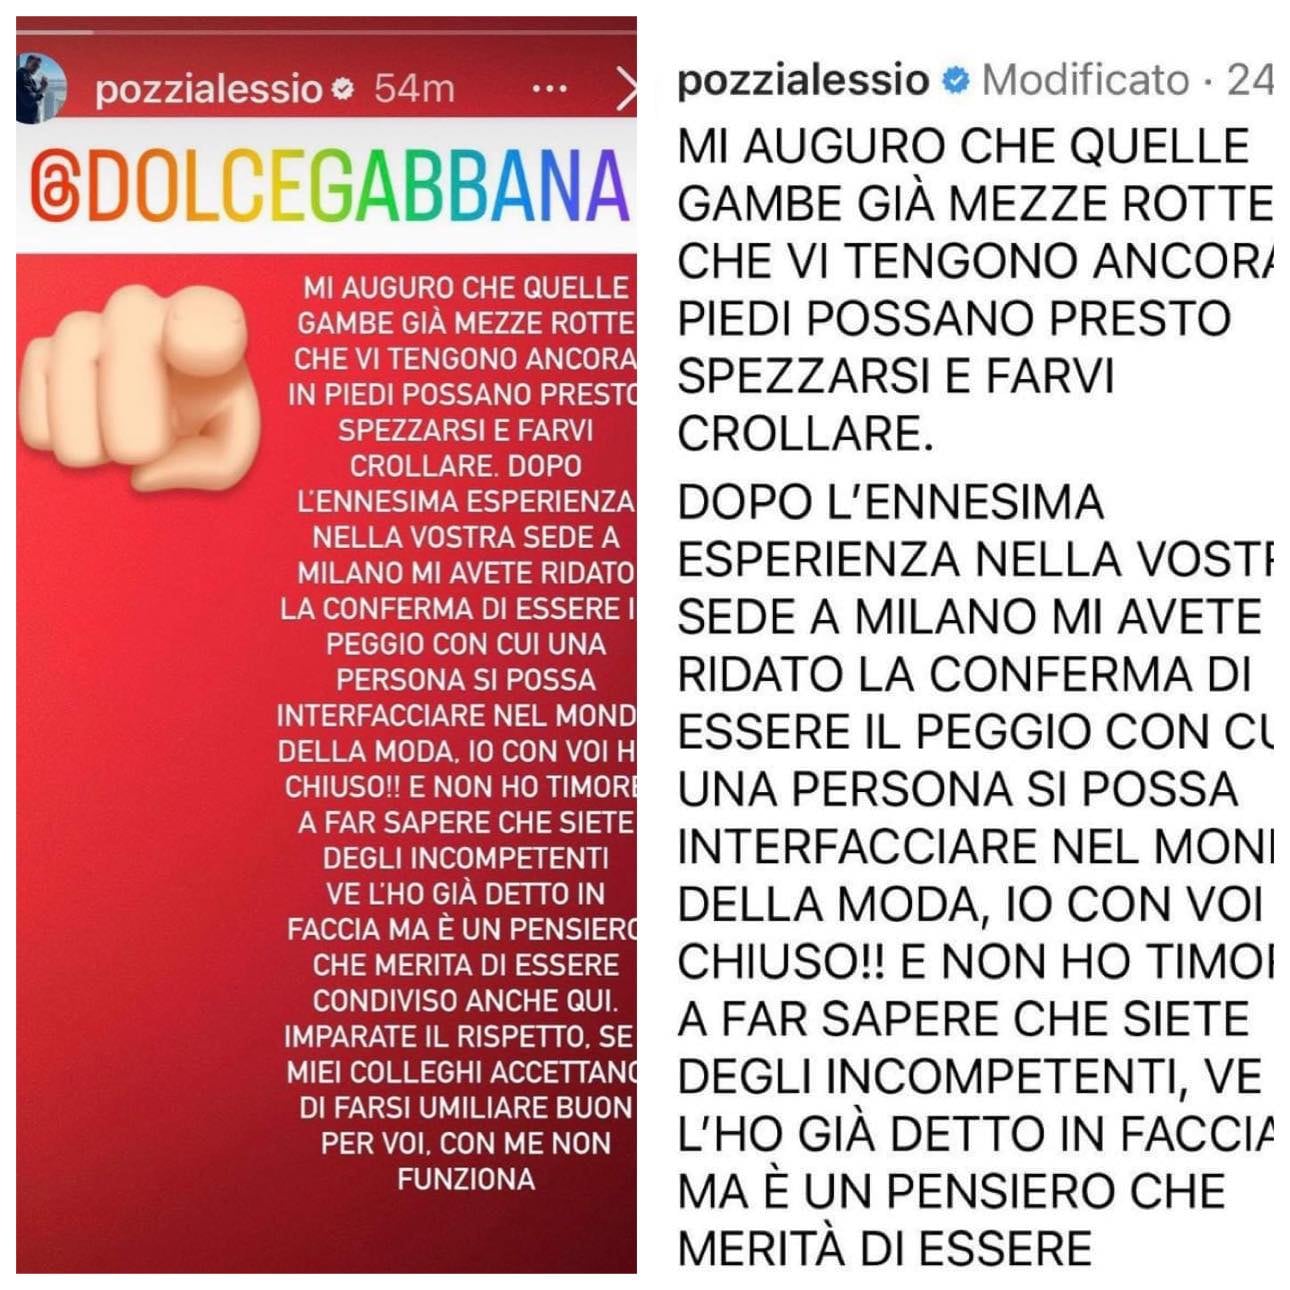 Alessio Pozzi, le mannequin face à Dolce & Gabbana : "Incompétent"